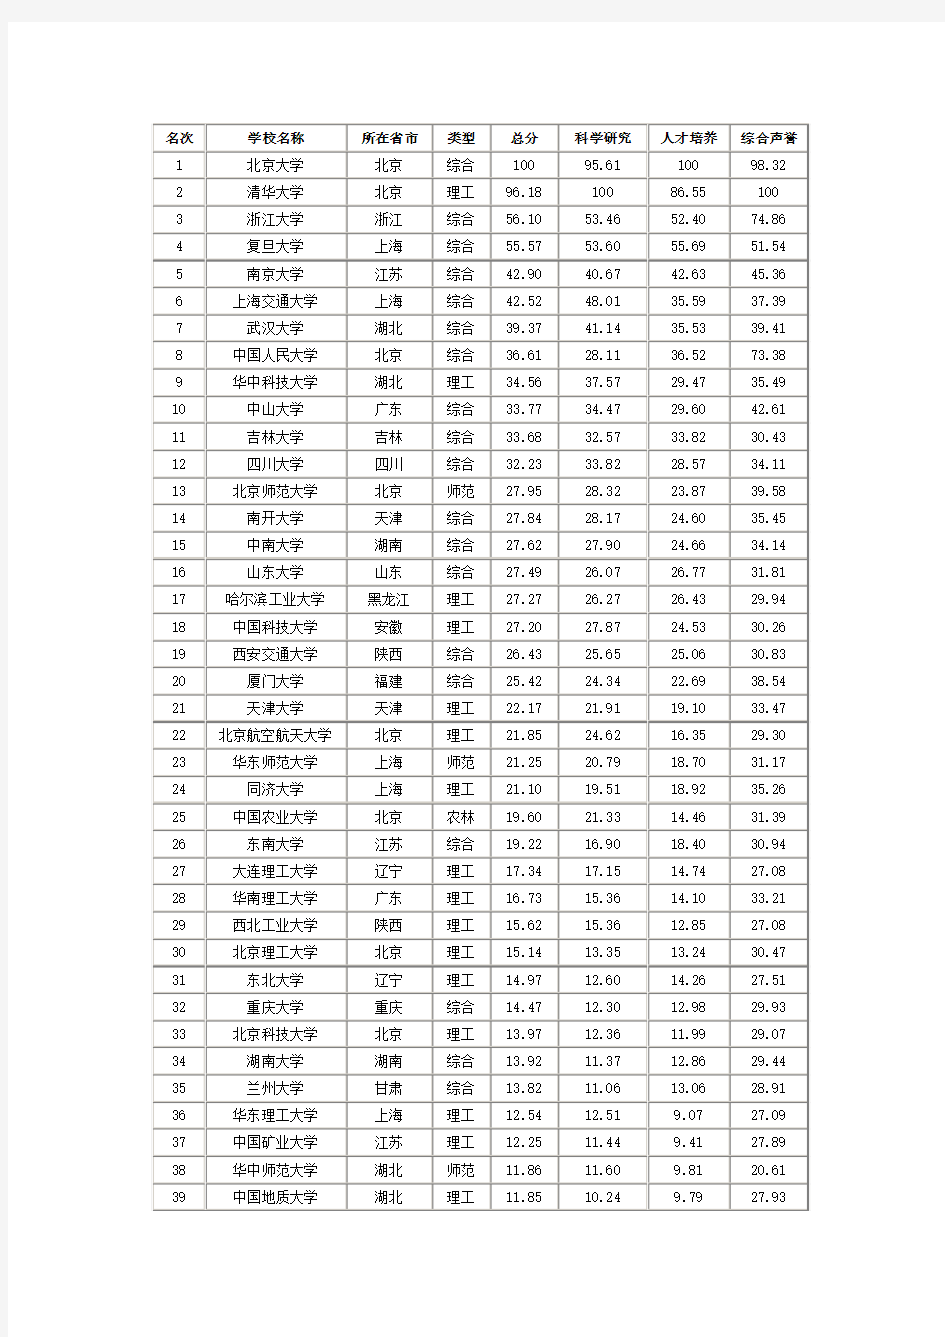 2011中国高校排名前100名